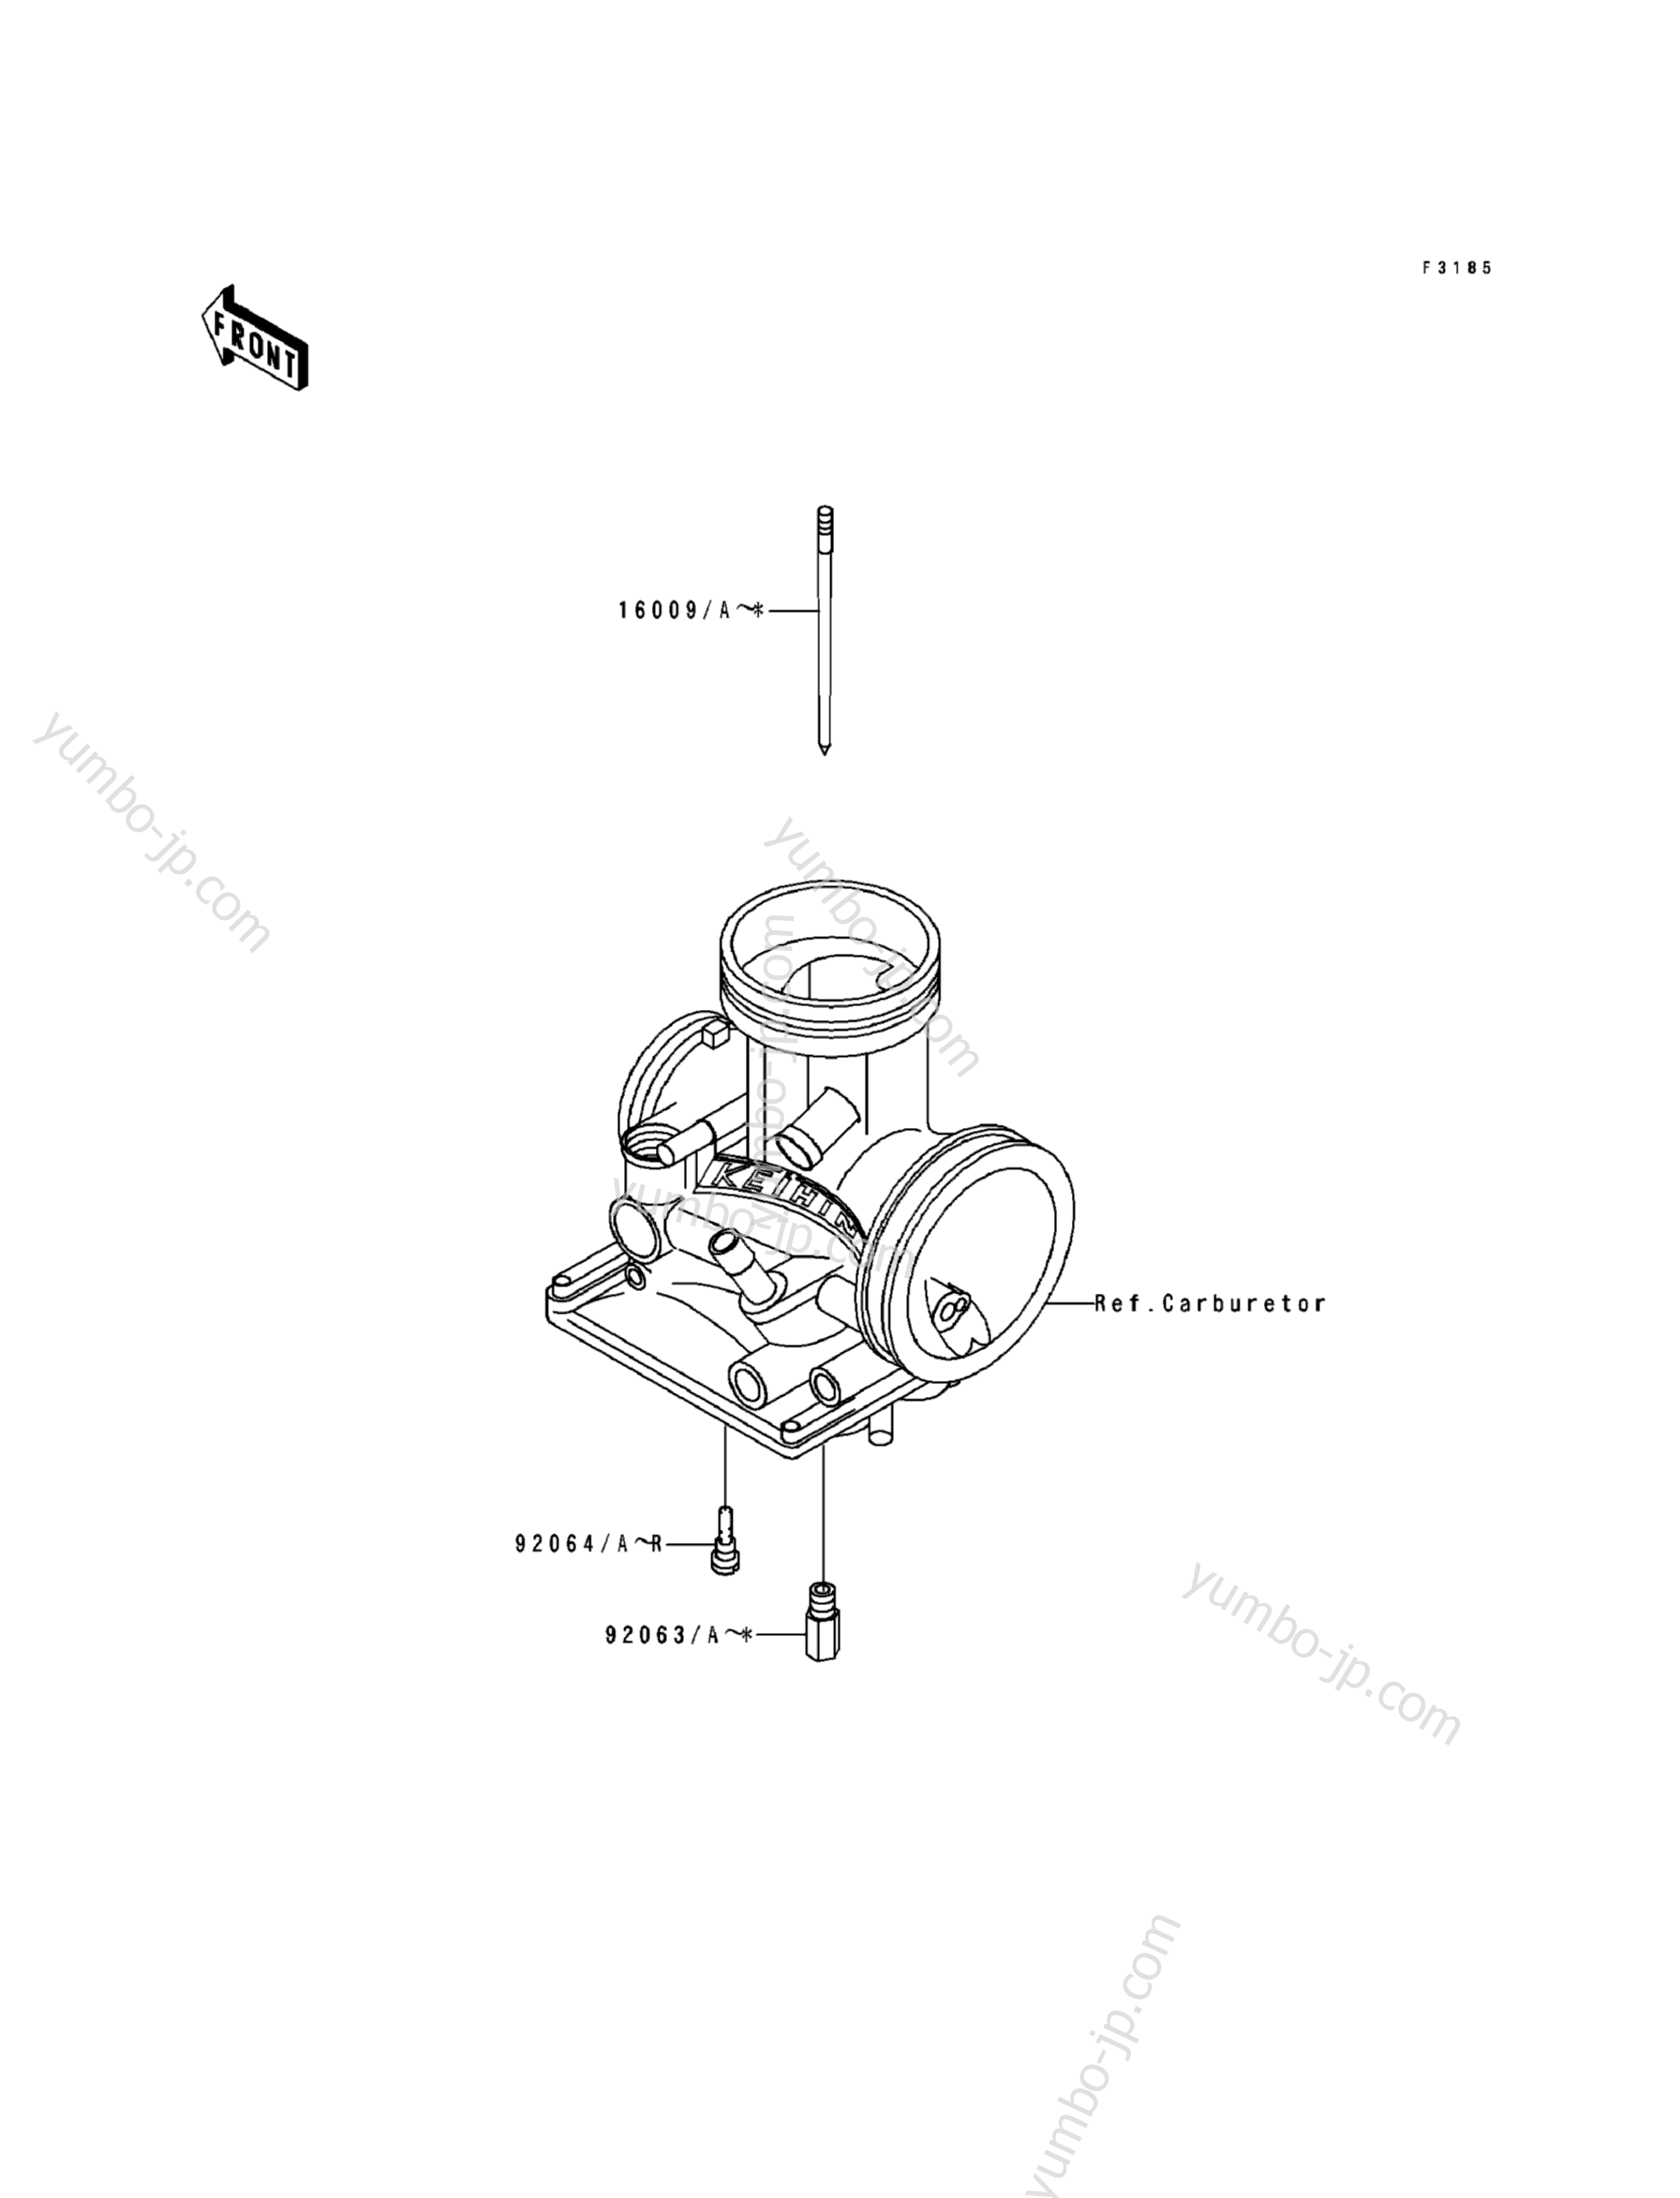 Optional Parts(1/4) for motorcycles KAWASAKI KX500 (KX500-E1) 1989 year